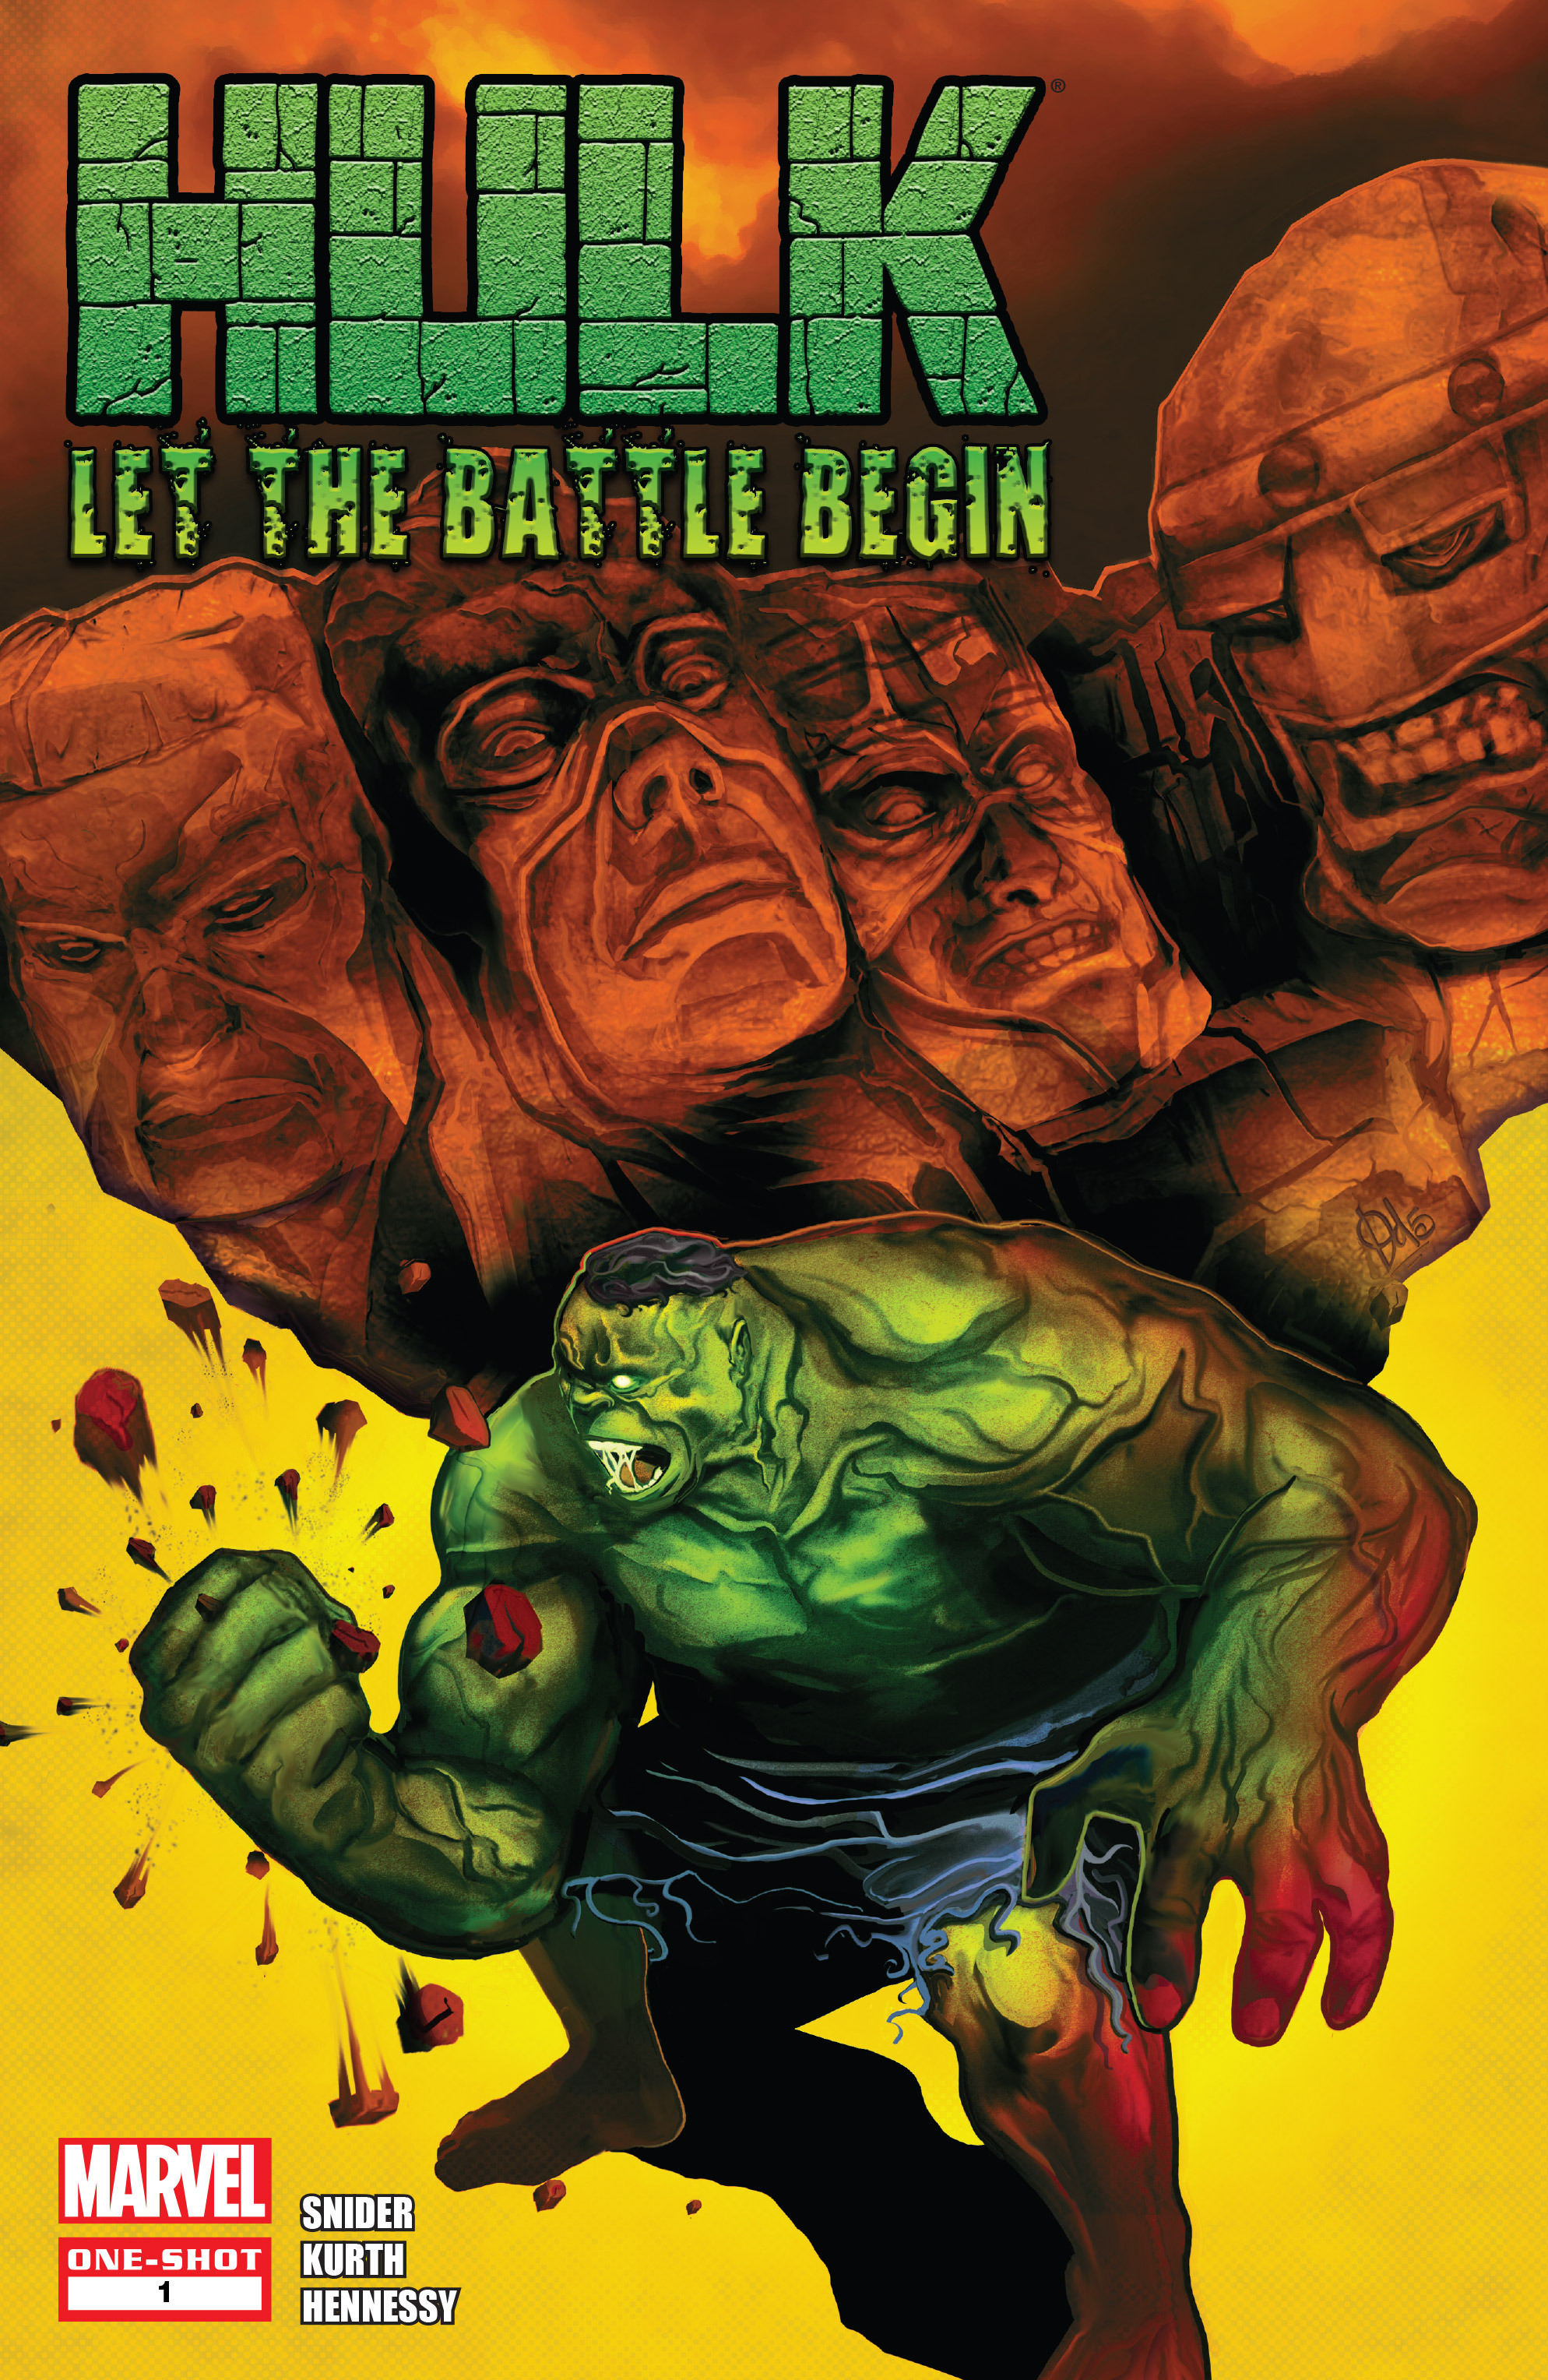 Read online Hulk: Let the Battle Begin comic -  Issue # Full - 1